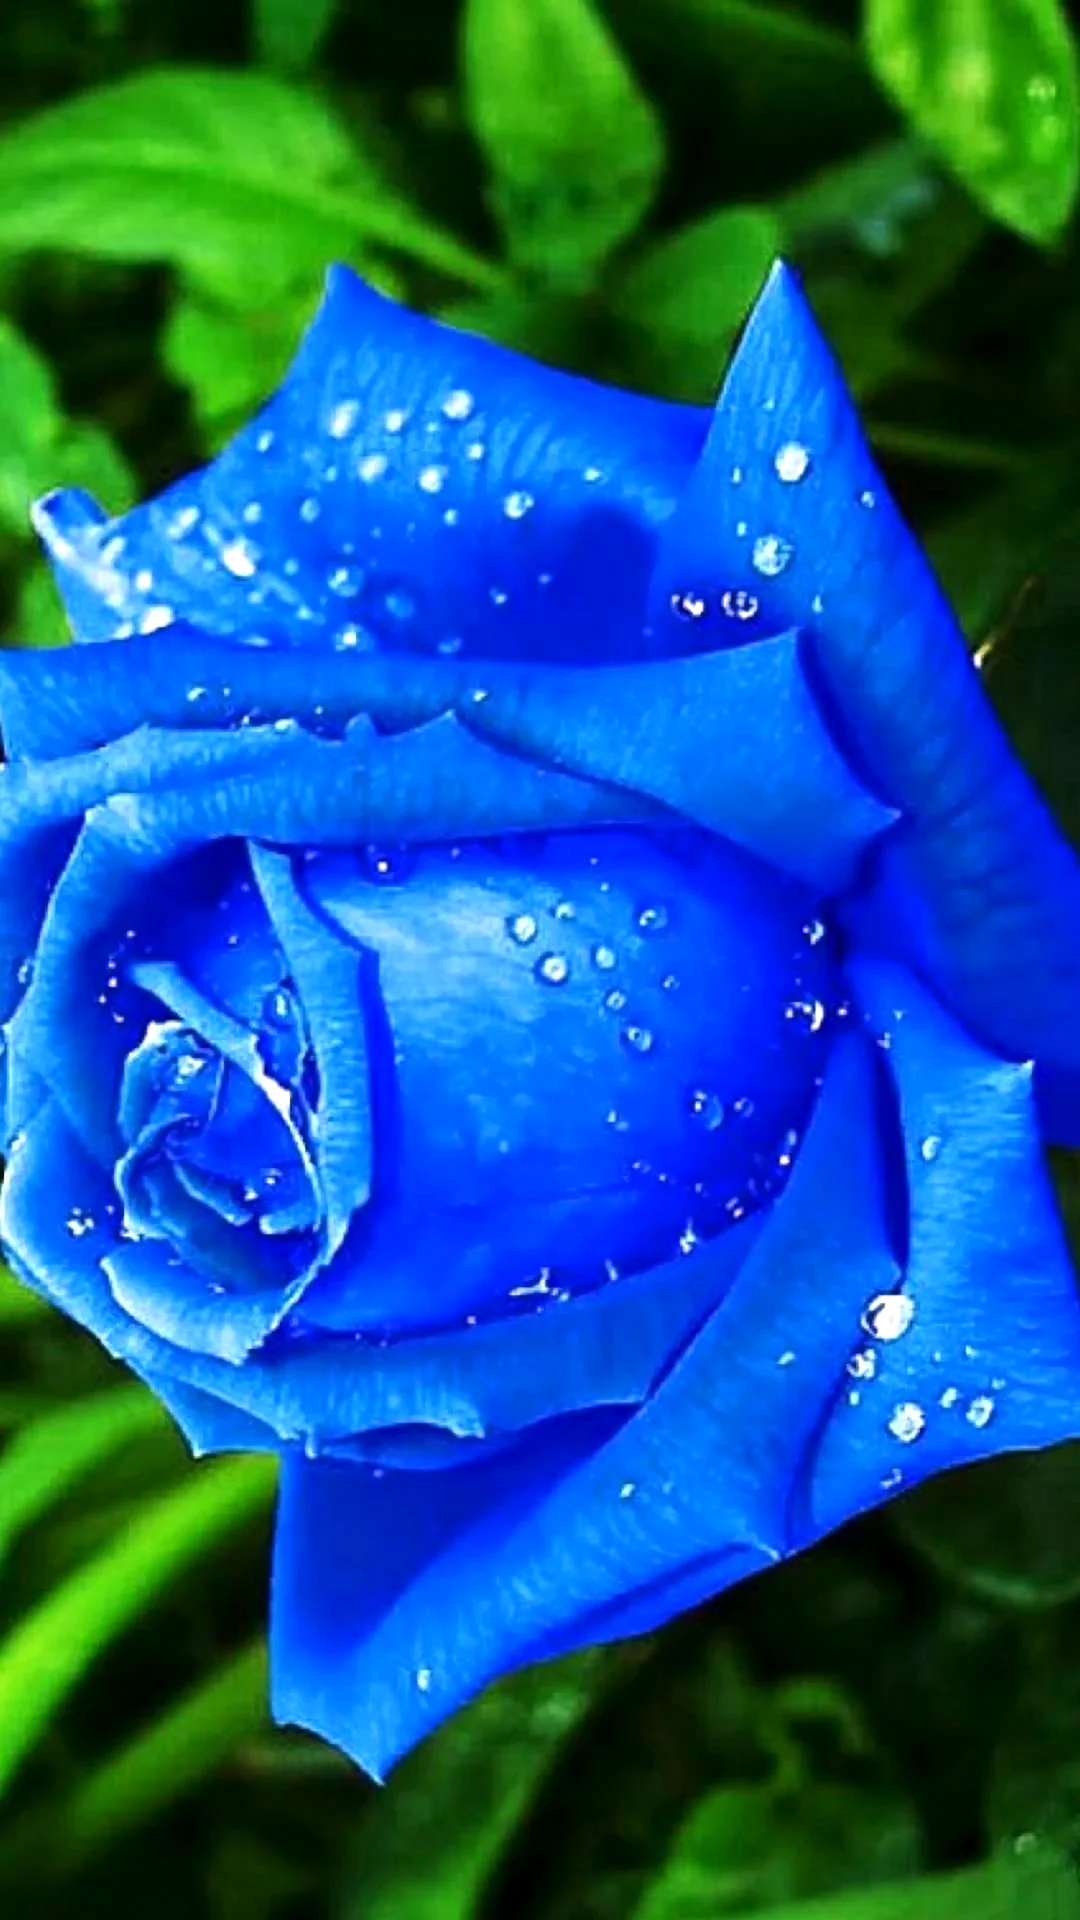 Роза голубая